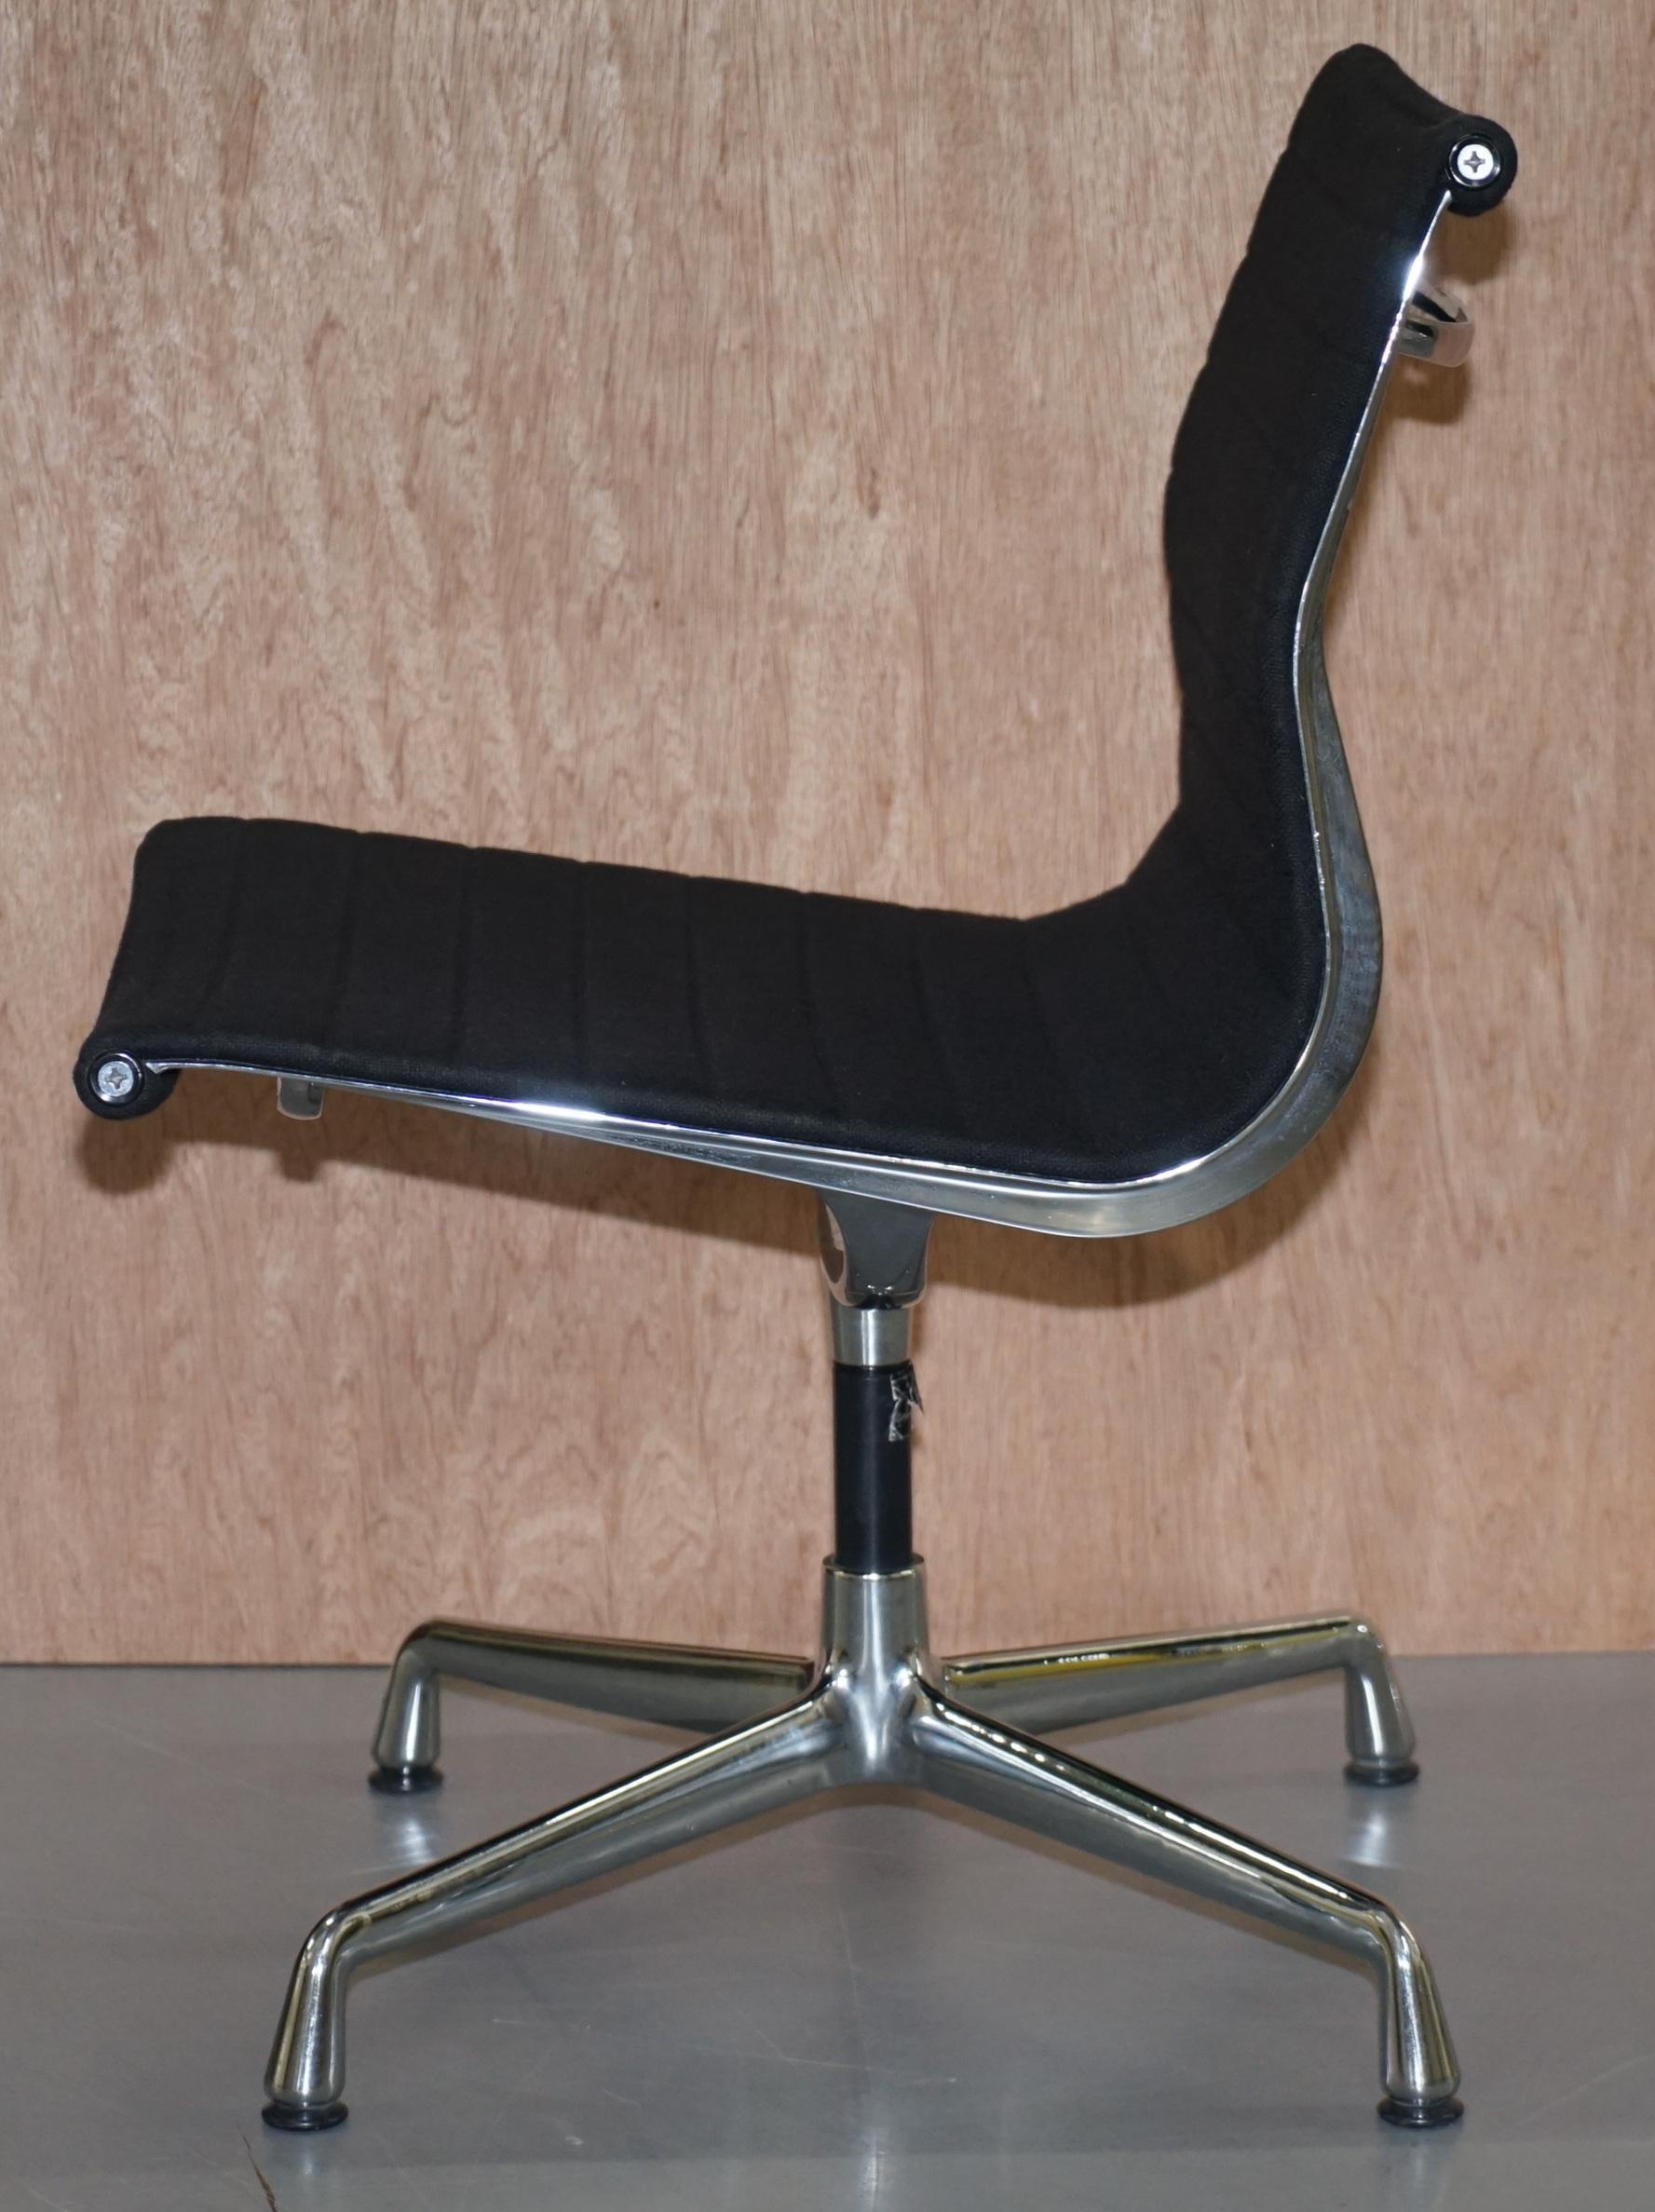 1 of 2 Original Vitra Eames Each EA 105 Hopsak Swivel Office Chairs 3